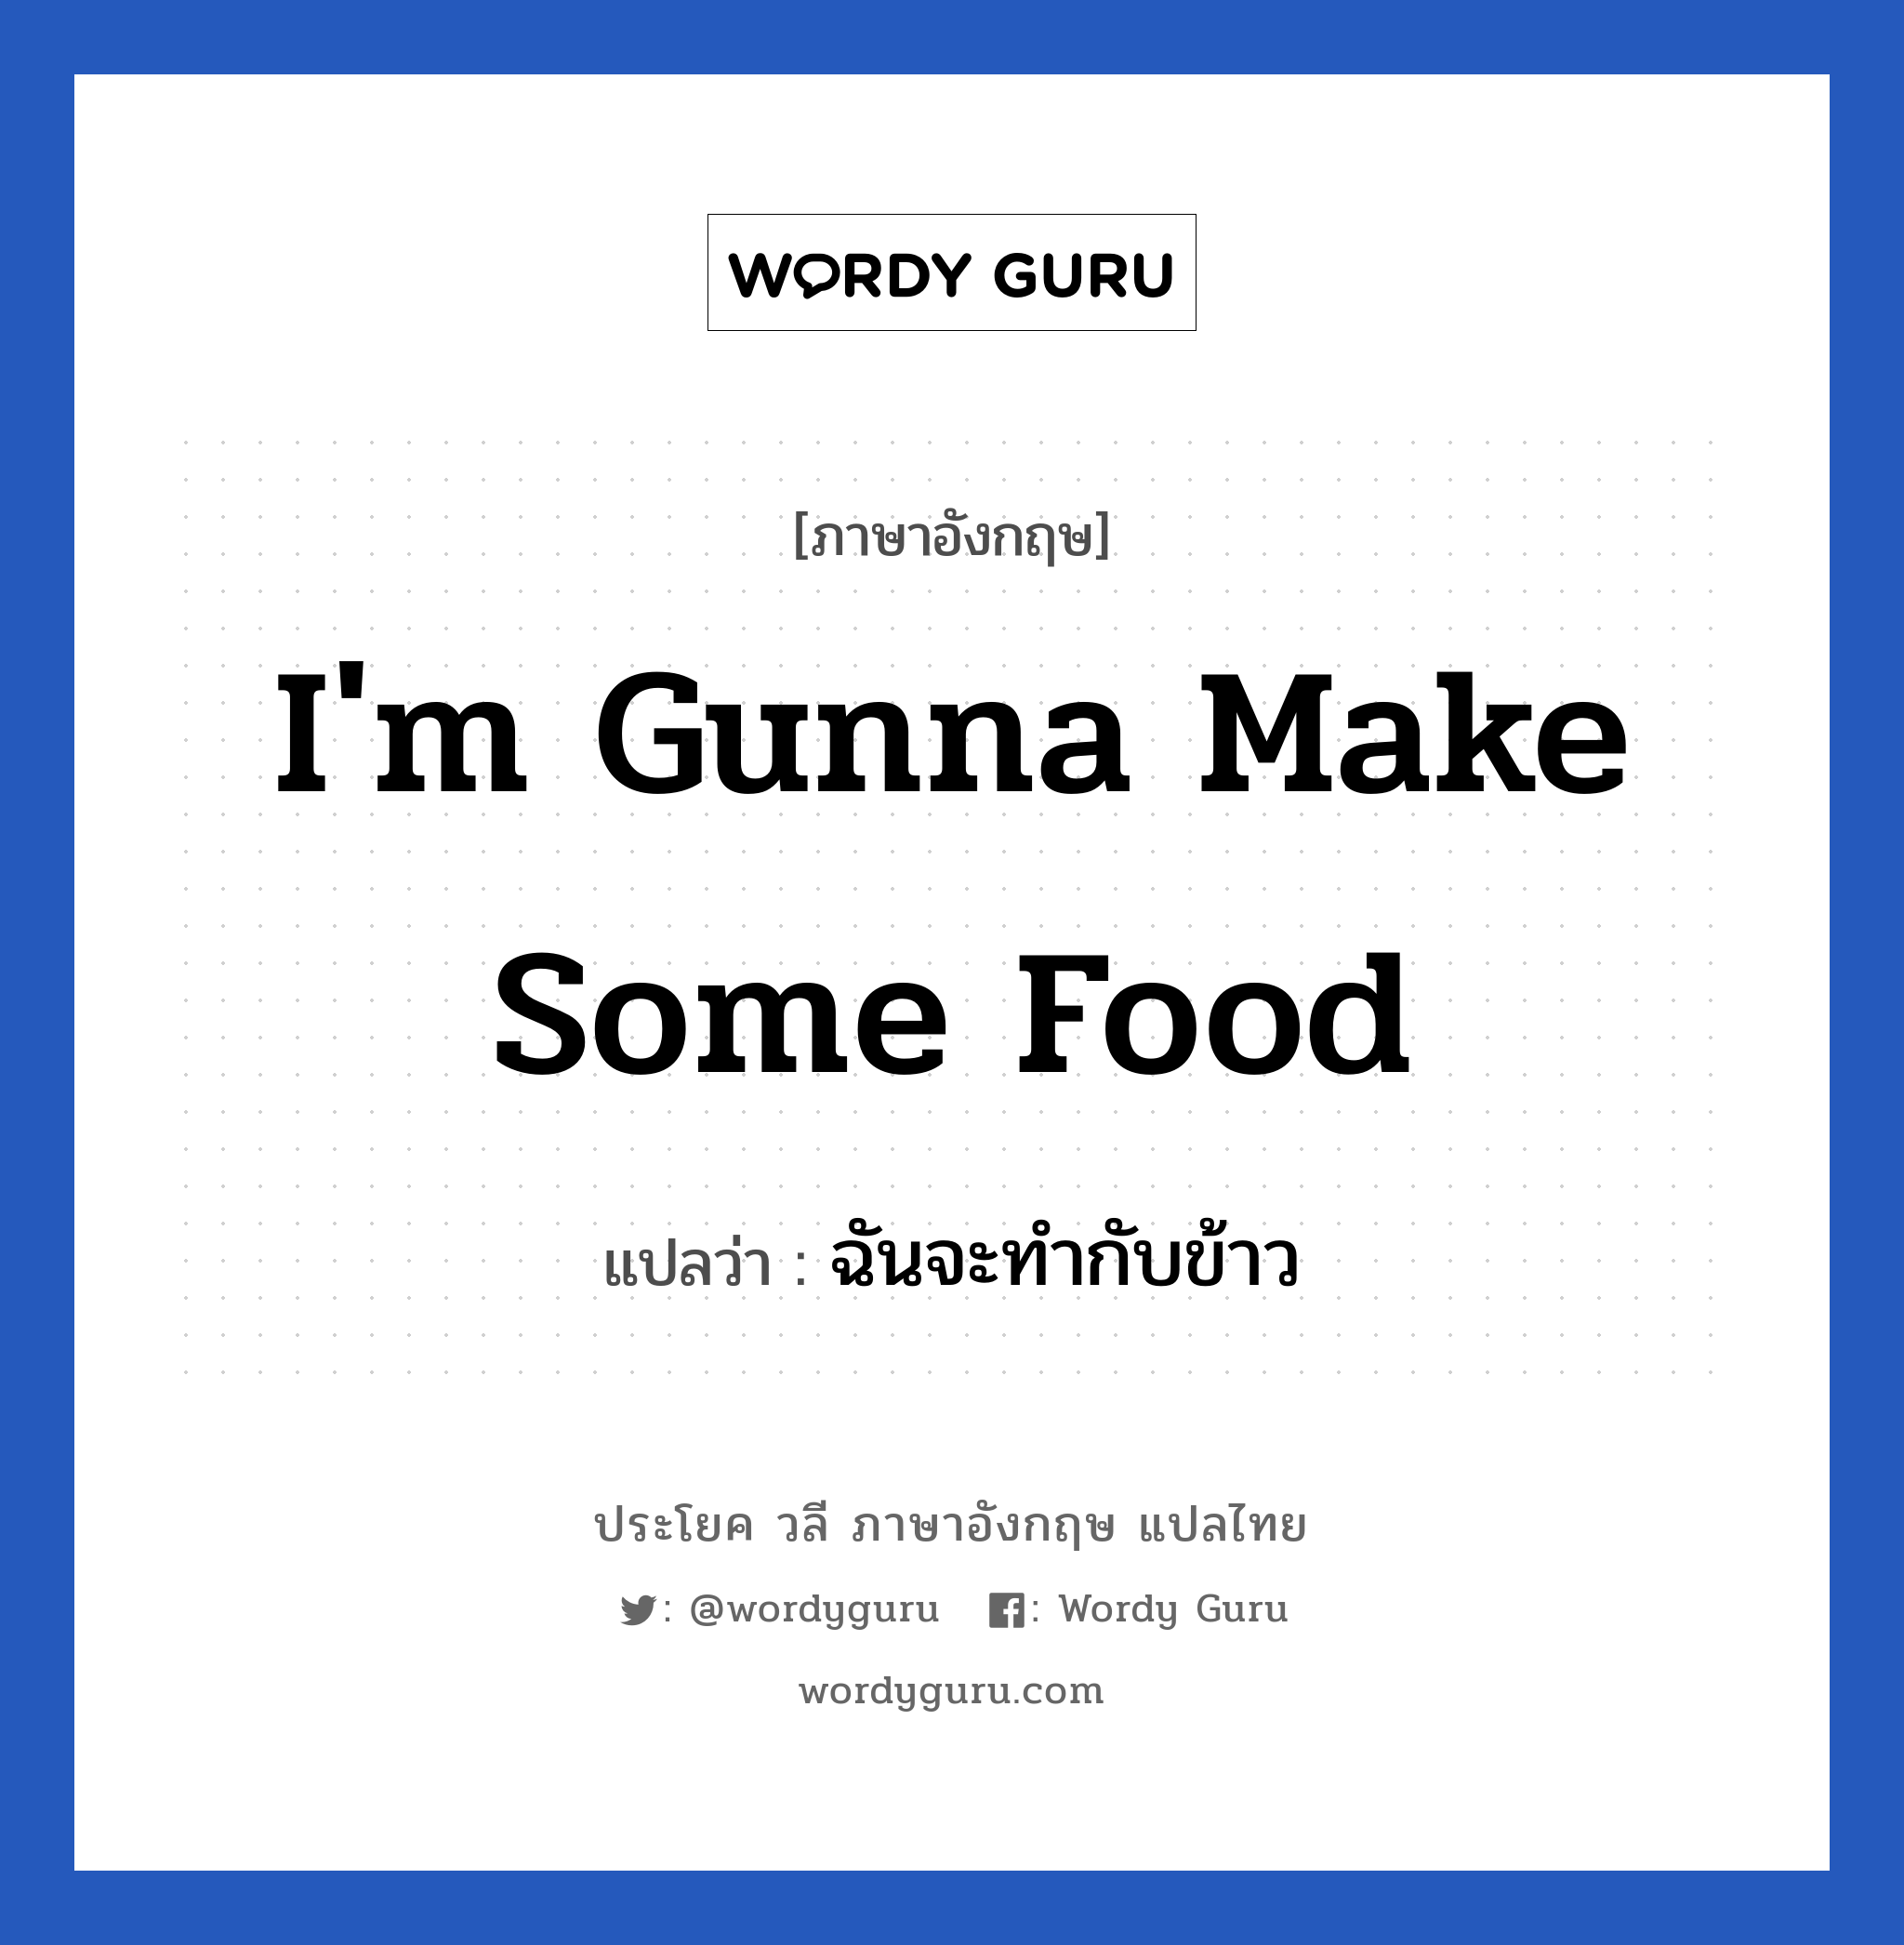 I'm gunna make some food แปลว่า?, วลีภาษาอังกฤษ I'm gunna make some food แปลว่า ฉันจะทำกับข้าว